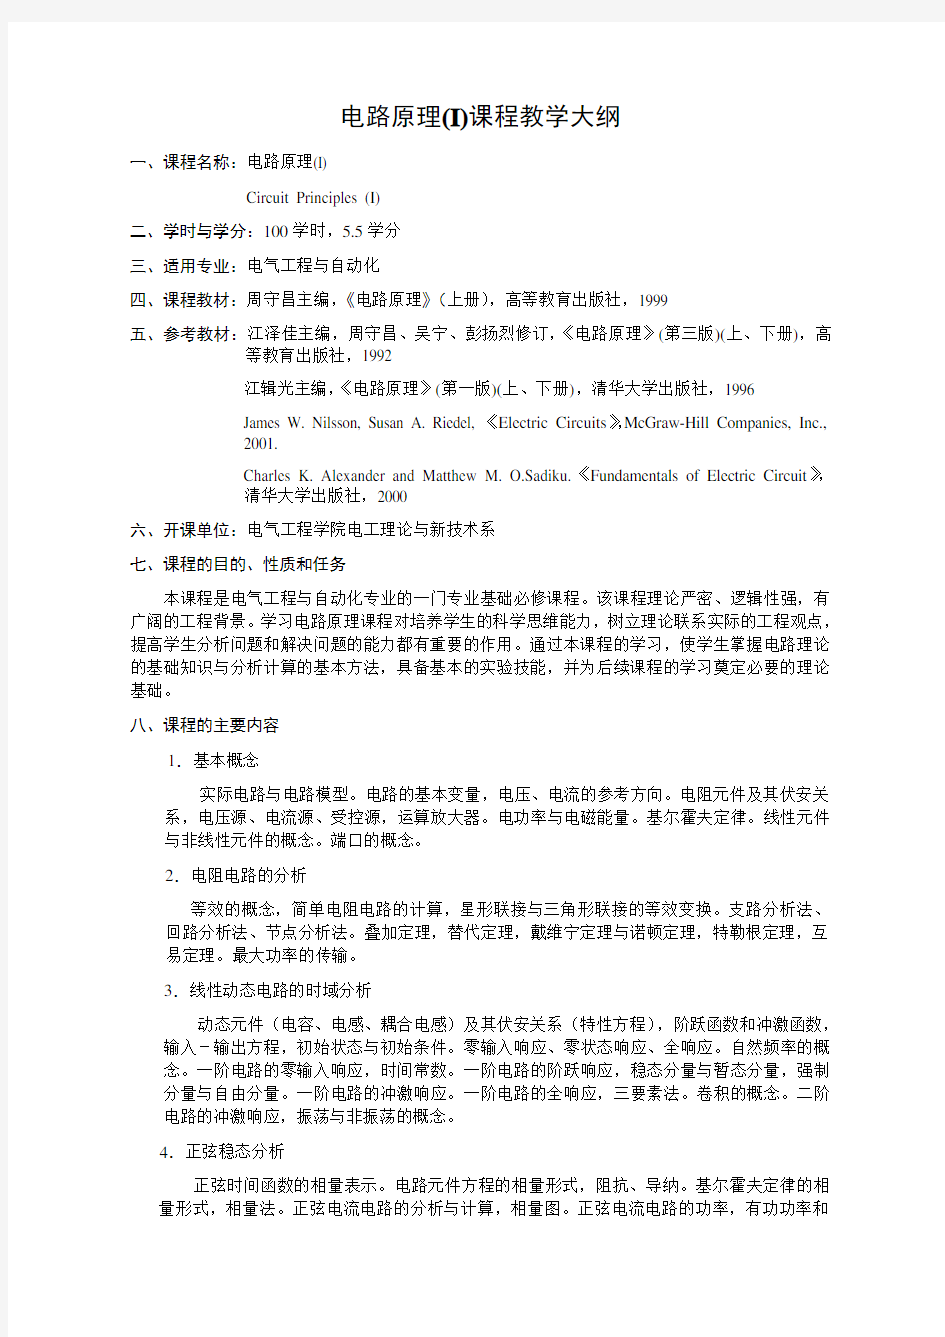 重庆大学电路原理考试大纲